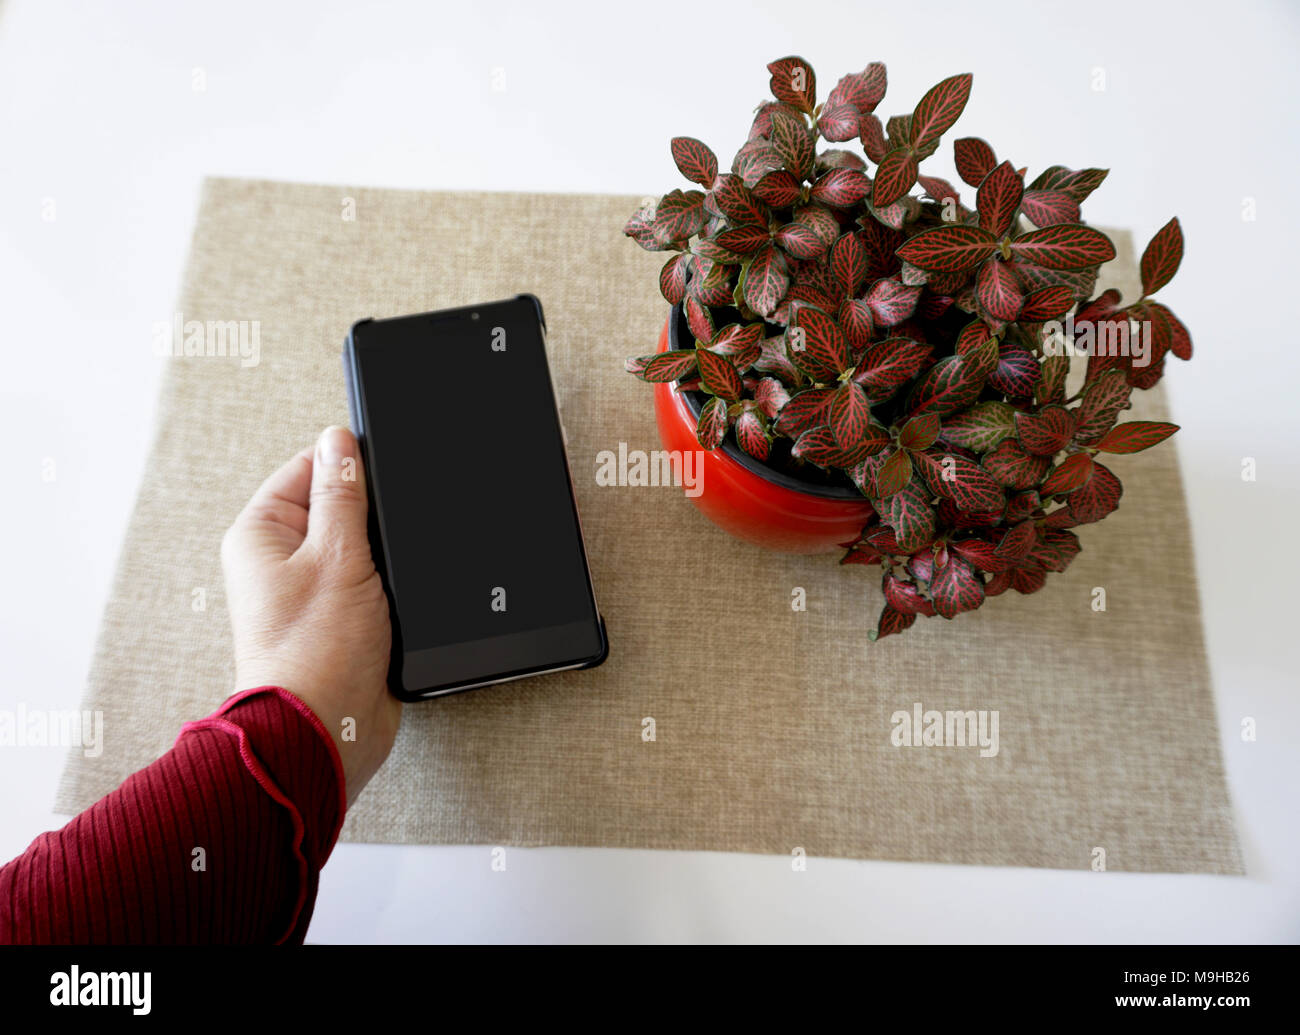 Frau Hand leerer Bildschirm smartphone Zelle auf der weißen Tisch Dekorieren mit Blumen Stockfoto